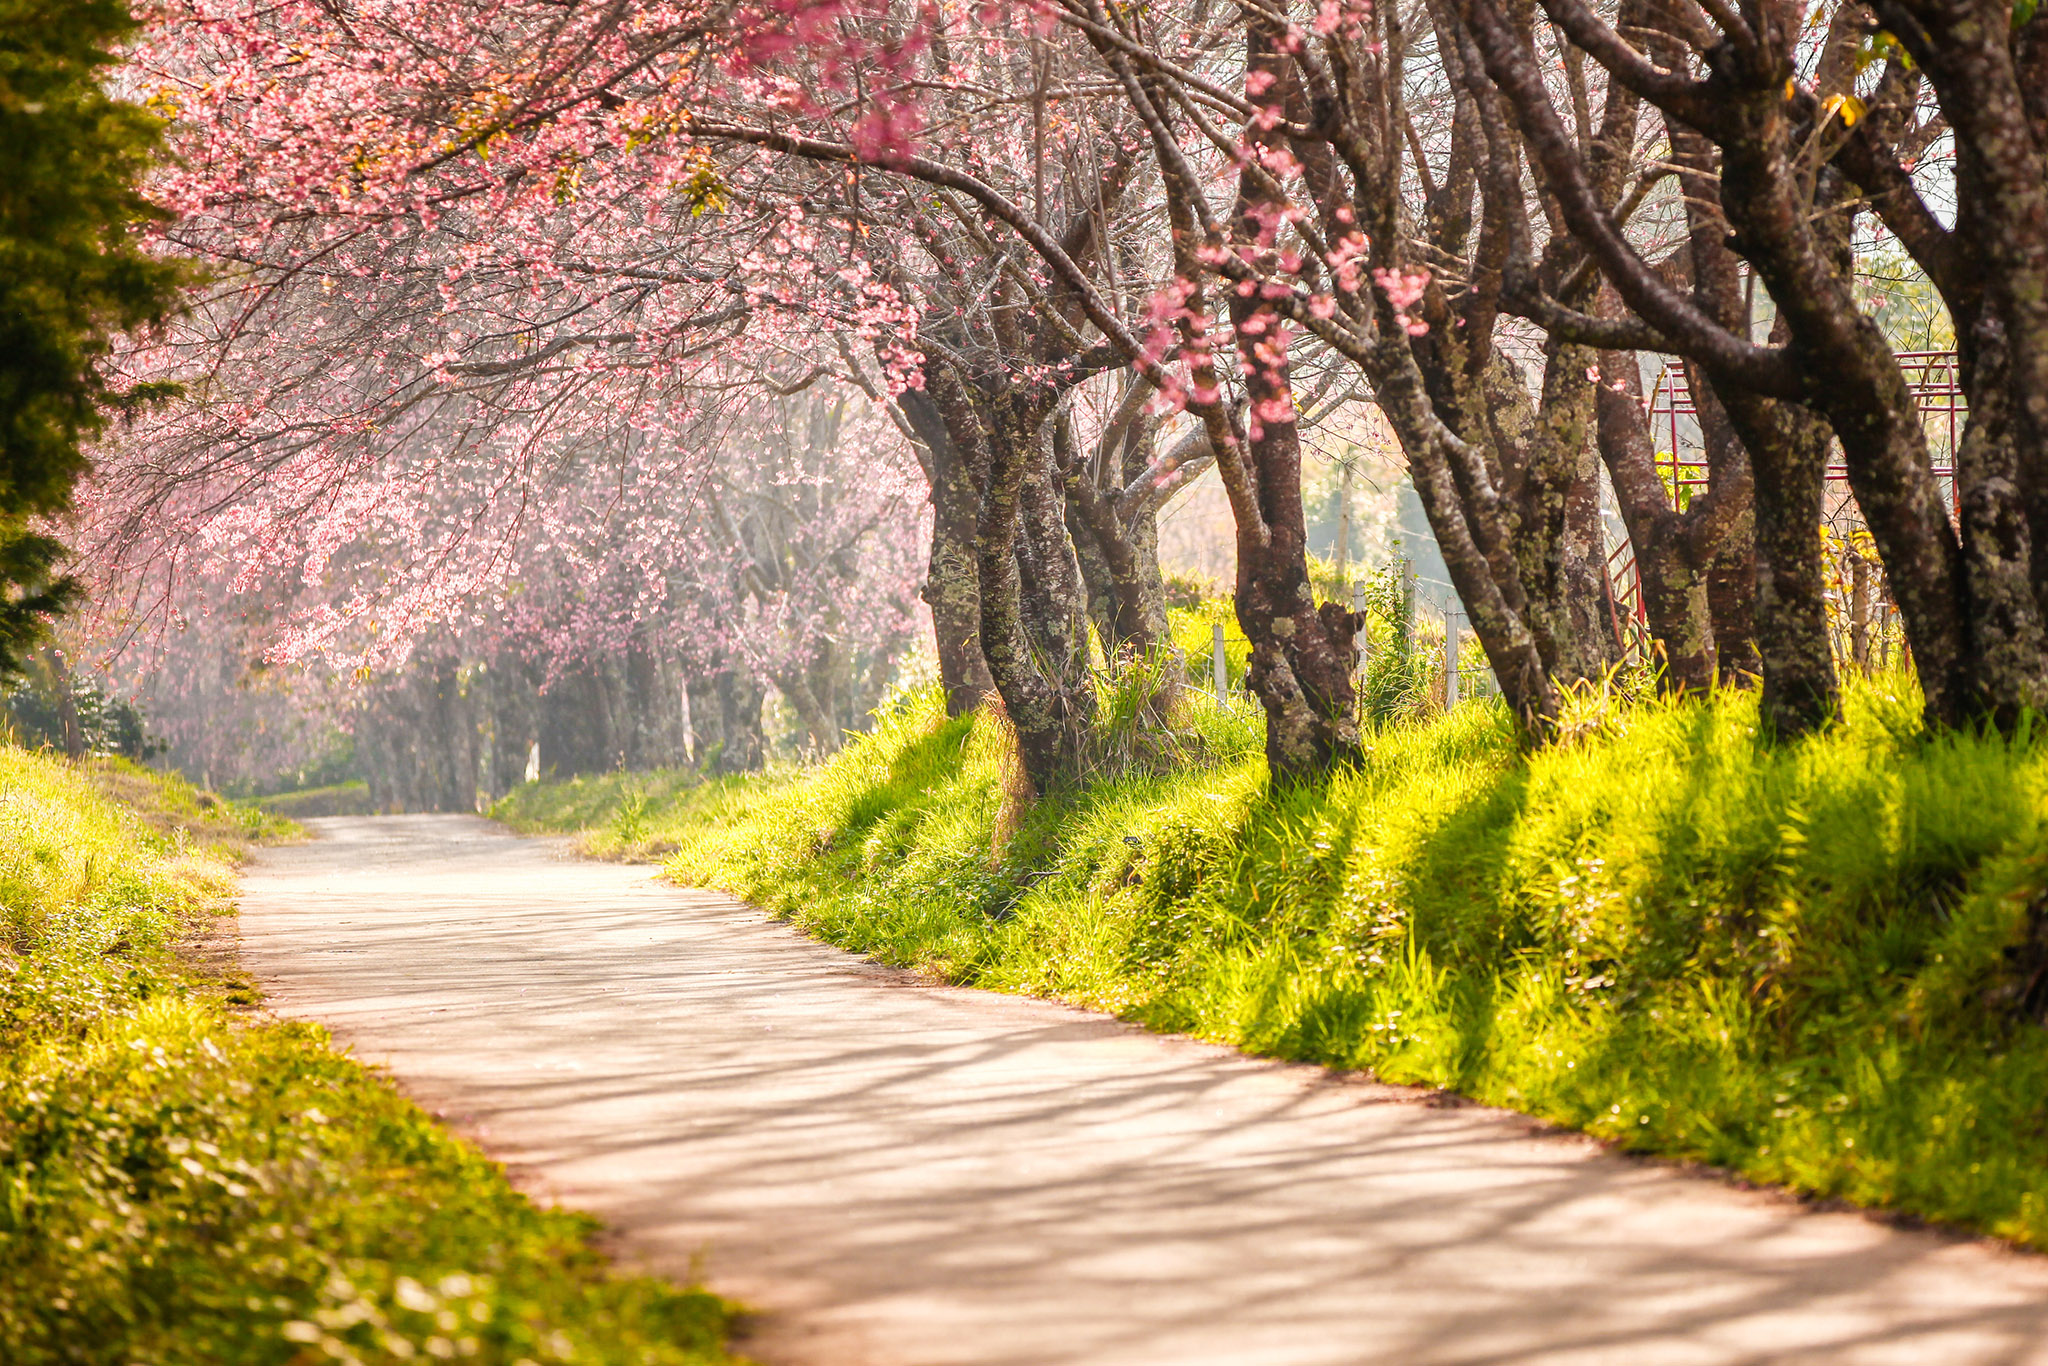 Hoa Đào rực rỡ trong hương sắc của Mùa Xuân làm cho cảnh quan trở nên lung linh và đầy màu sắc. Hãy xem và ngắm nhìn cùng chúng tôi để cảm nhận hết sức huyền diệu của mùa xuân.